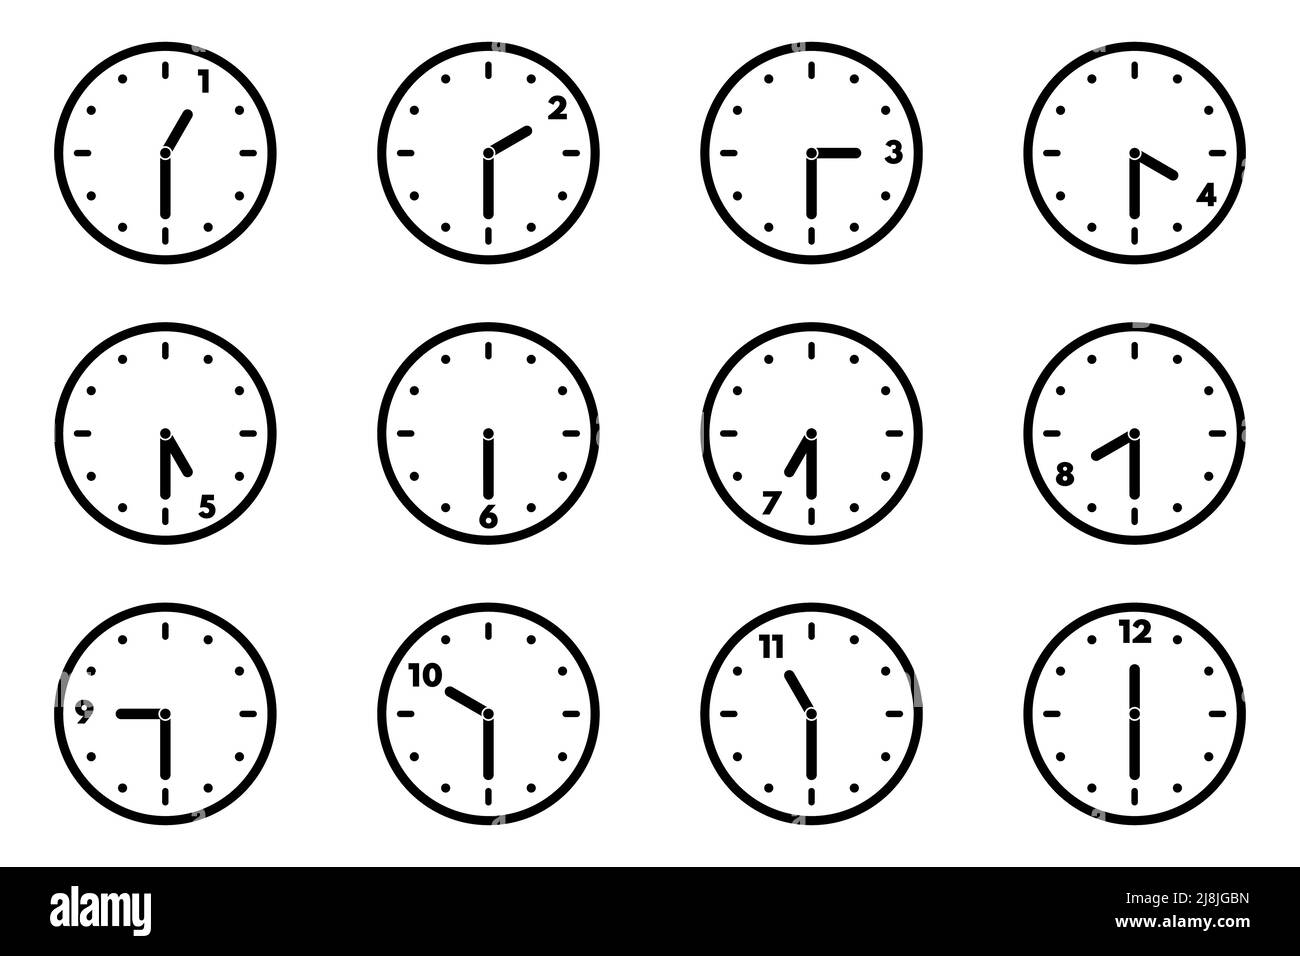 Einstellen des Symbols für die analoge Uhr für jede Stunde und halbe Stunde. 12-Stunden-Format. Version der halben letzten Stunden. Vektorgrafik Stock Vektor